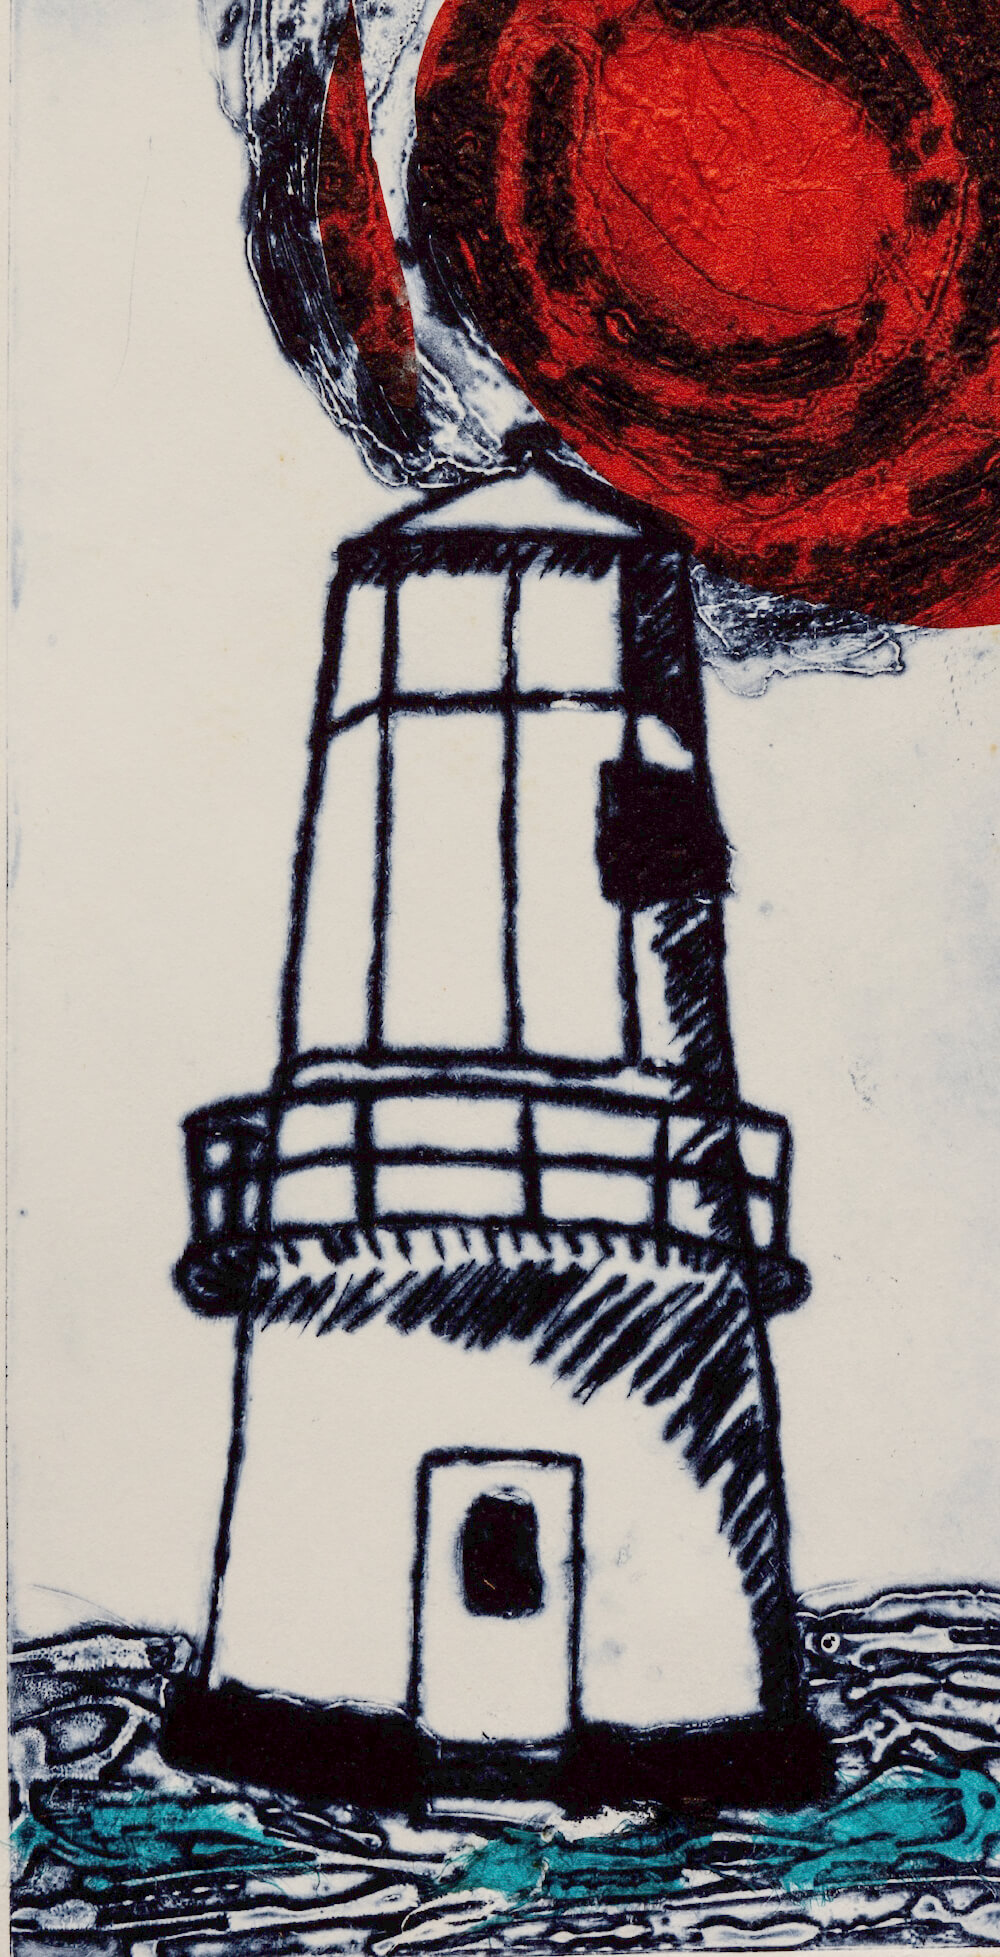 Lighthouse II by Sharran Makin © Sharran Makin